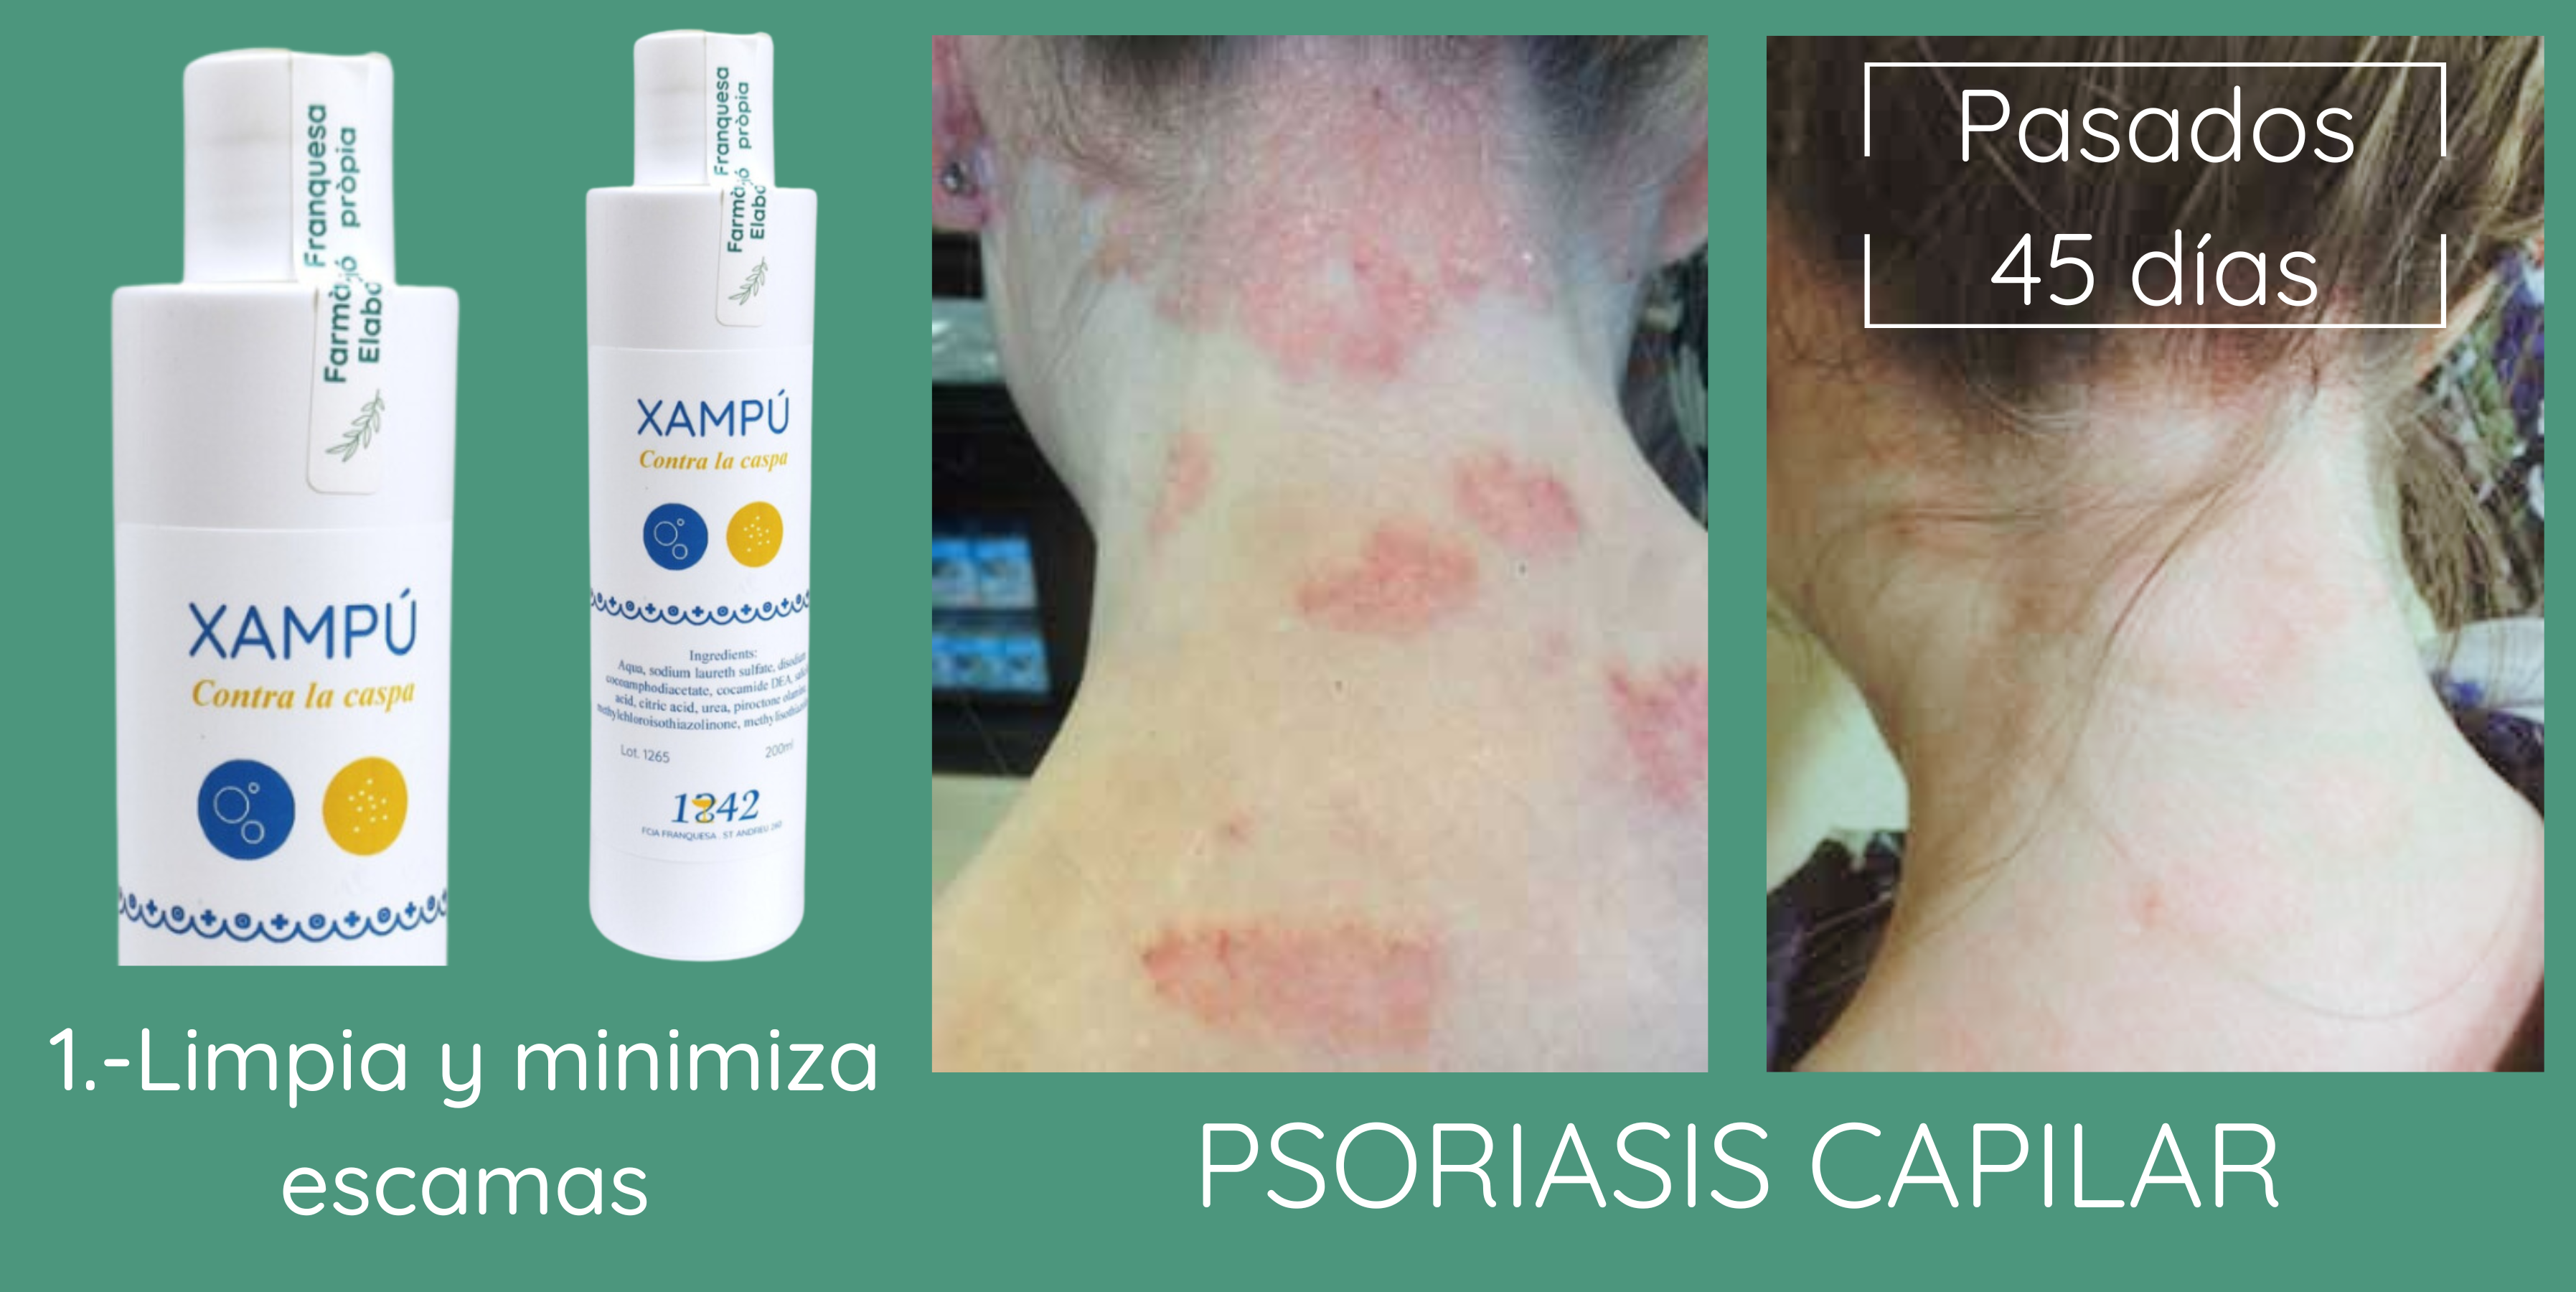 psoriasis capilar: buena resolución con el champú contra la caspa 1842 y la crema prevent age 1842